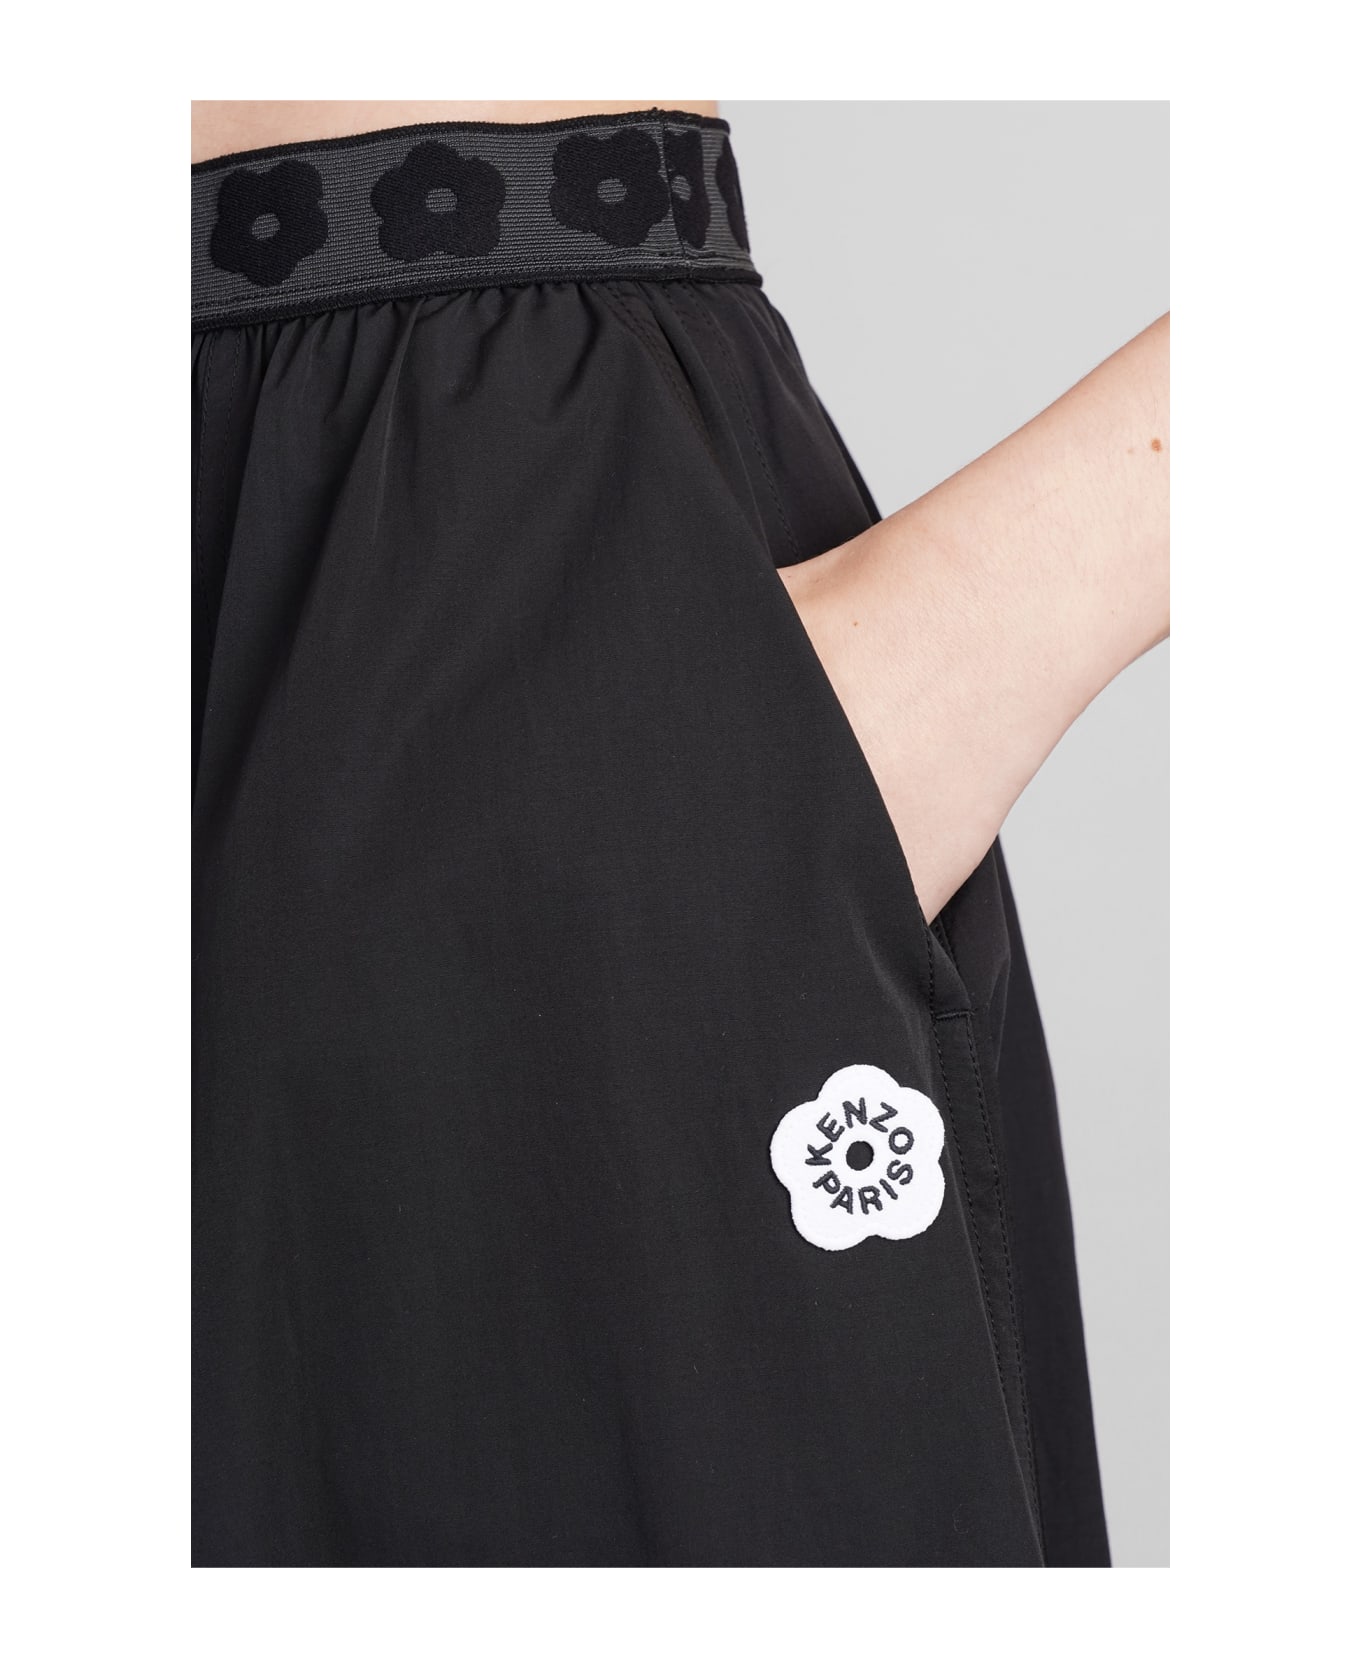 Kenzo Skirt In Black Polyester - black